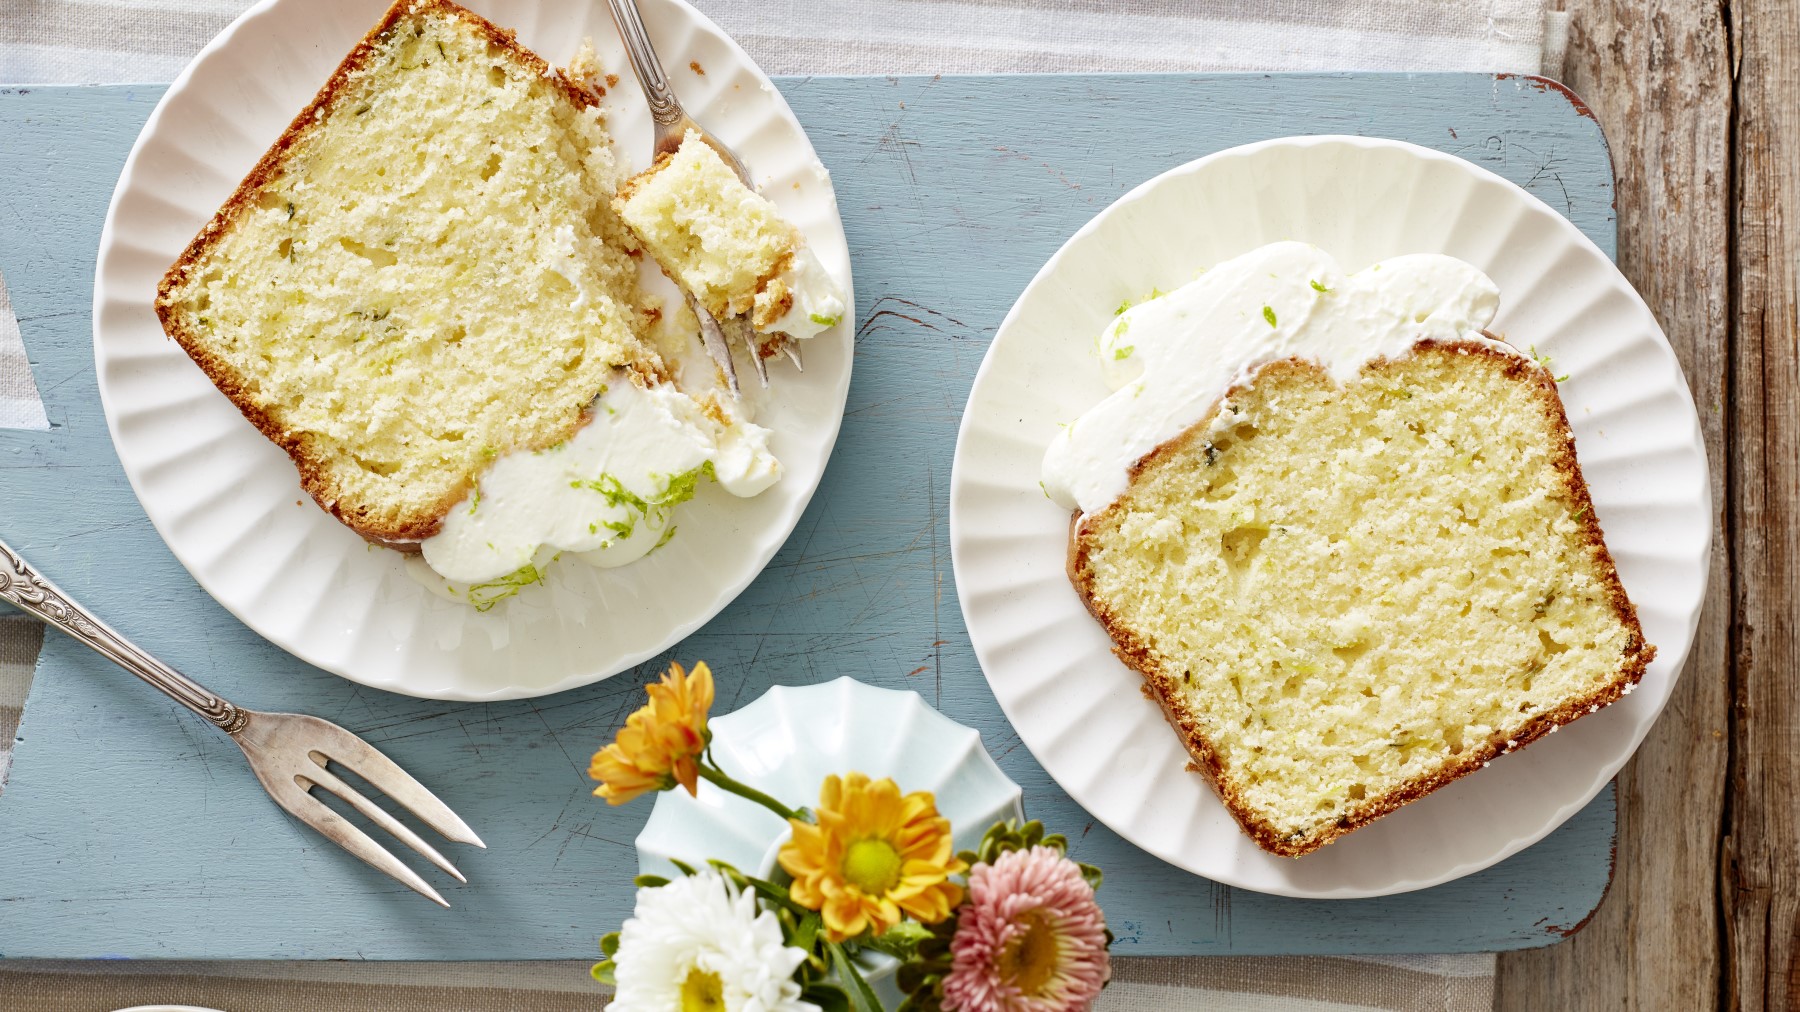 Limetten-Zucchini-Kuchen auf weißen Tellern auf blauem Hintergrund. Links unten eine Gabel und rechts davon Blumen.